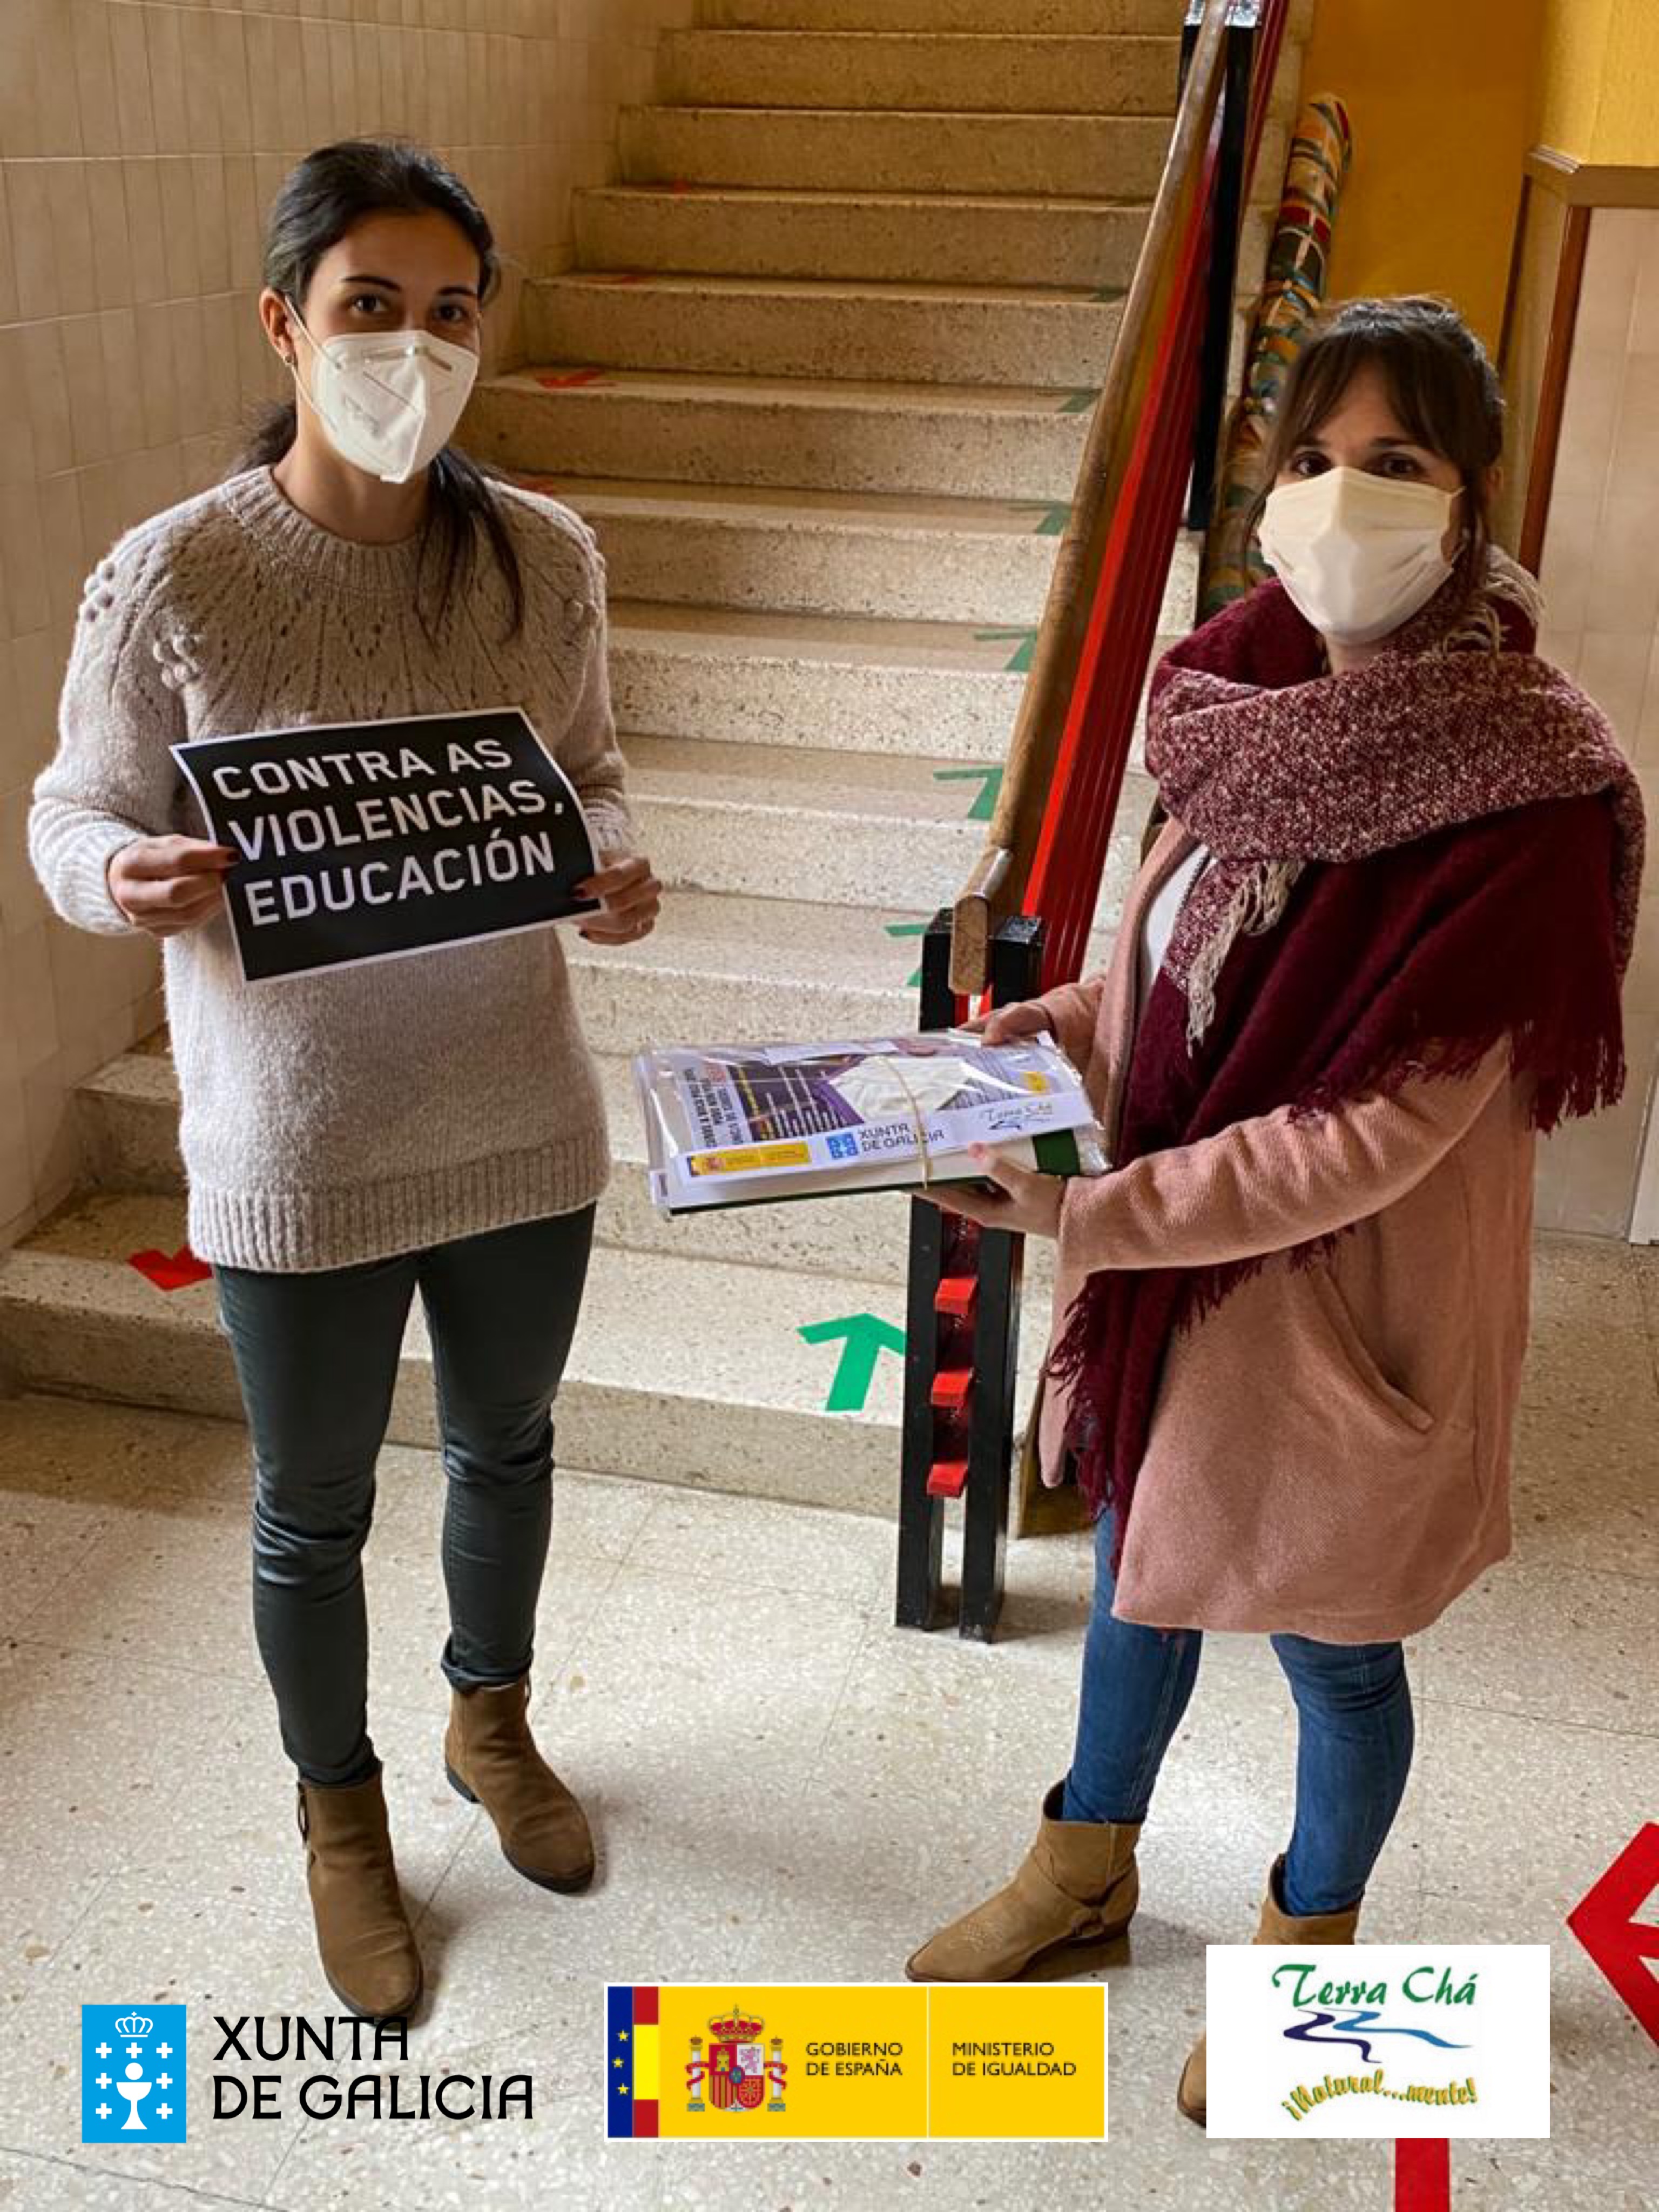 O Concello de Begonte en colaboración co GDR, a Xunta de Galicia e o Ministerio de Igualdade, fixo entrega de máscaras conmemorativas do Día Internacional da Eliminación da Violencia contra a Muller